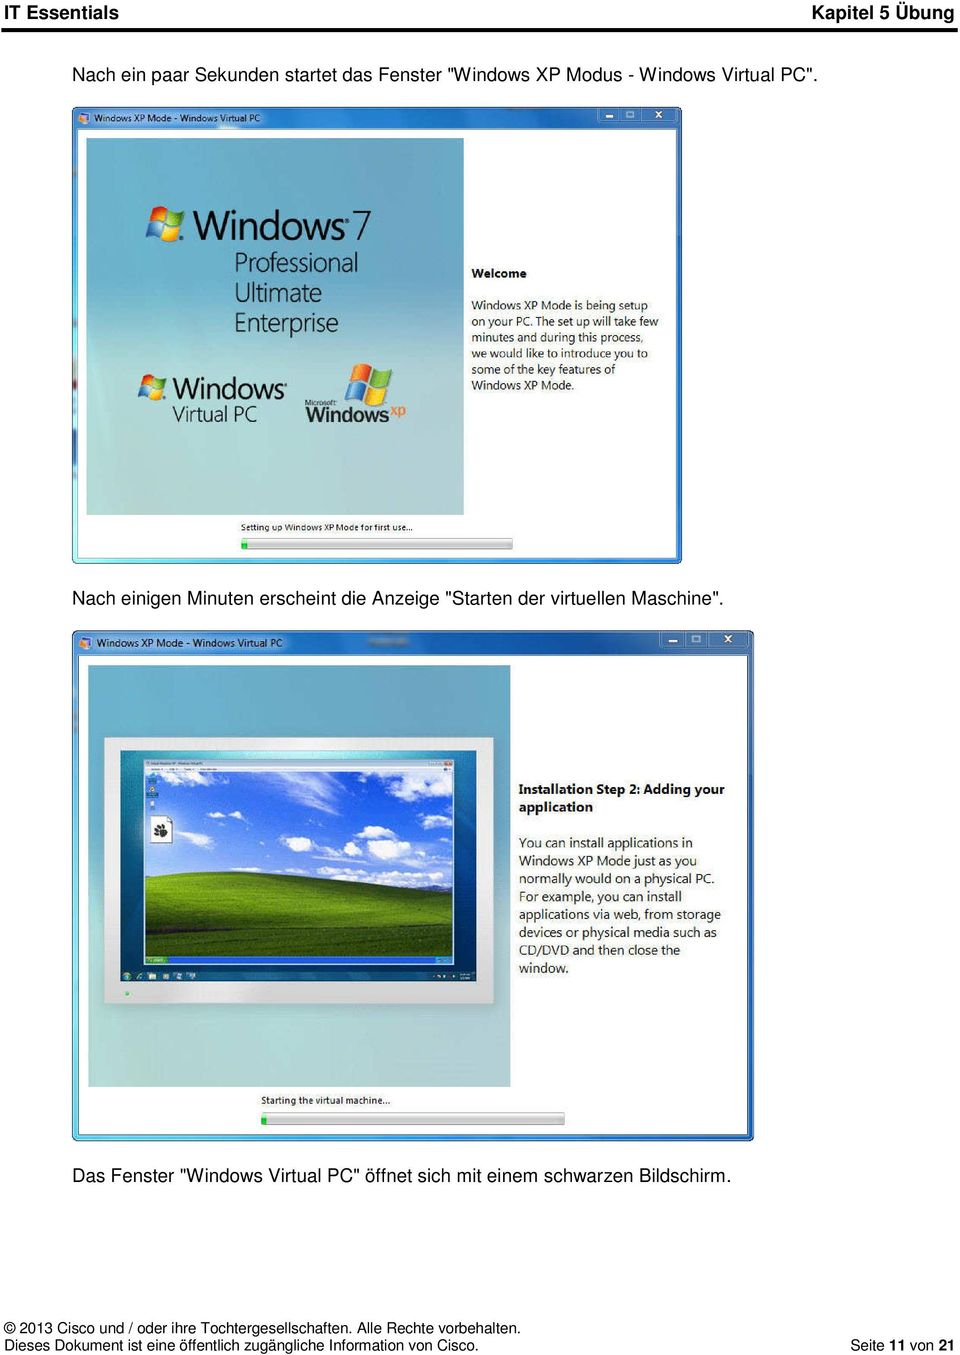 Das Fenster "Windows Virtual PC" öffnet sich mit einem schwarzen Bildschirm.